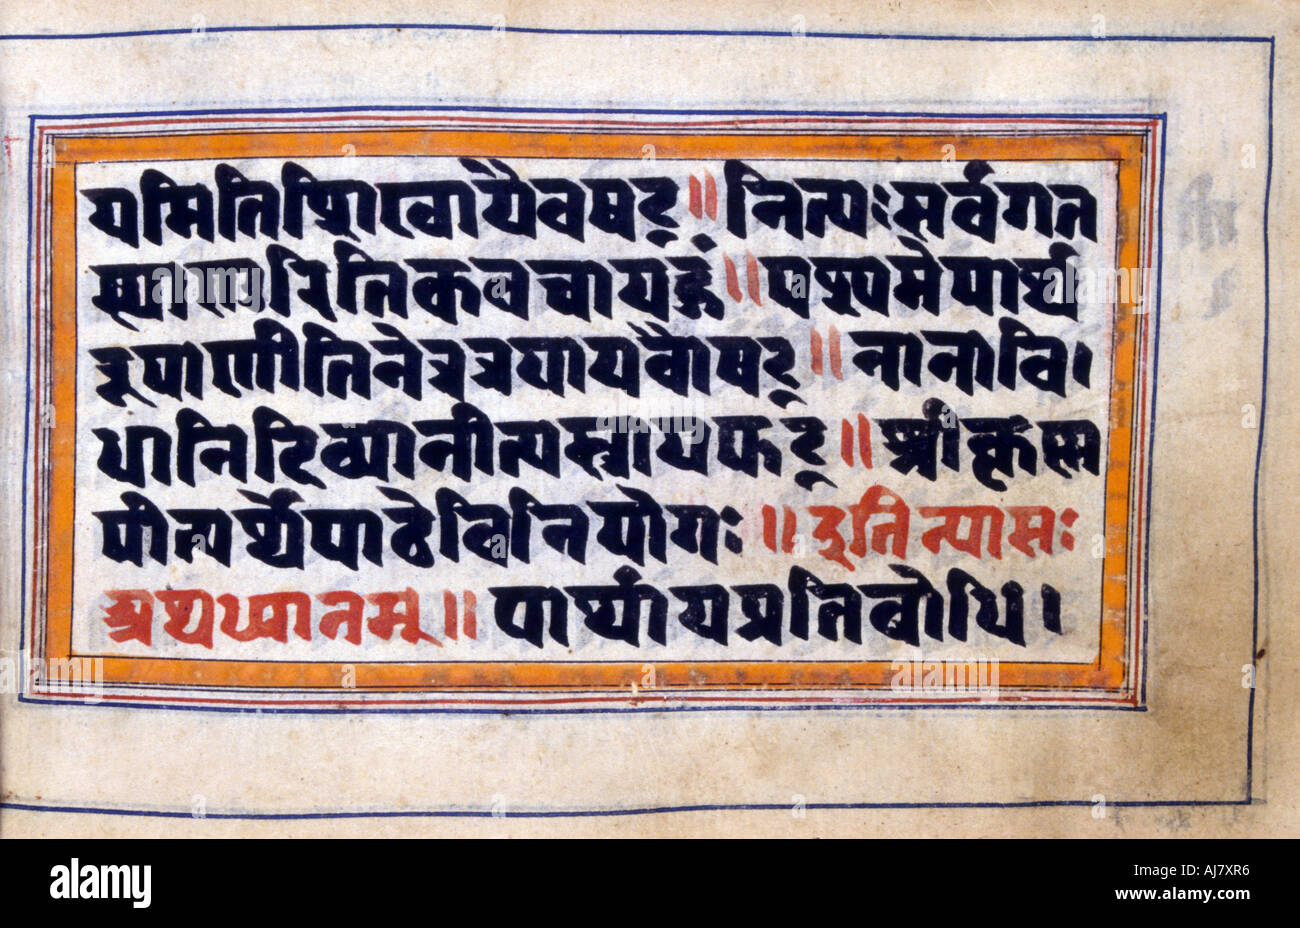 Extrait du la Bhagavad-Gita (le chant du Bienheureux), Inde du Nord, manuscrit du 18e siècle. Artiste : Anon Banque D'Images